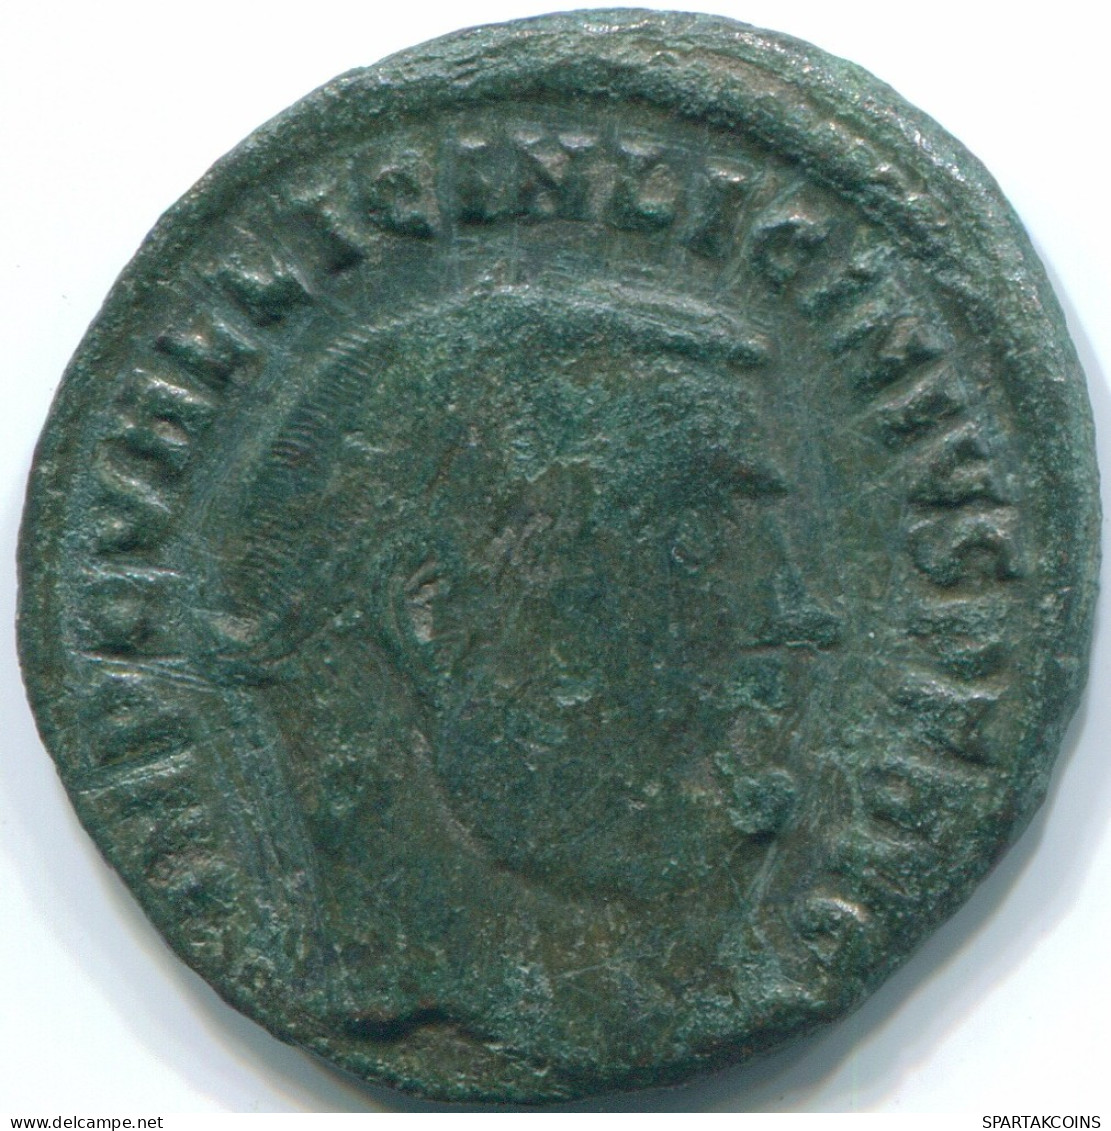 LICINIUS I Heraclea Mint AD 312 IOVICONS ERVATORI
 2.85g/21.66mm #ROM1007.8.D.A - Der Christlischen Kaiser (307 / 363)